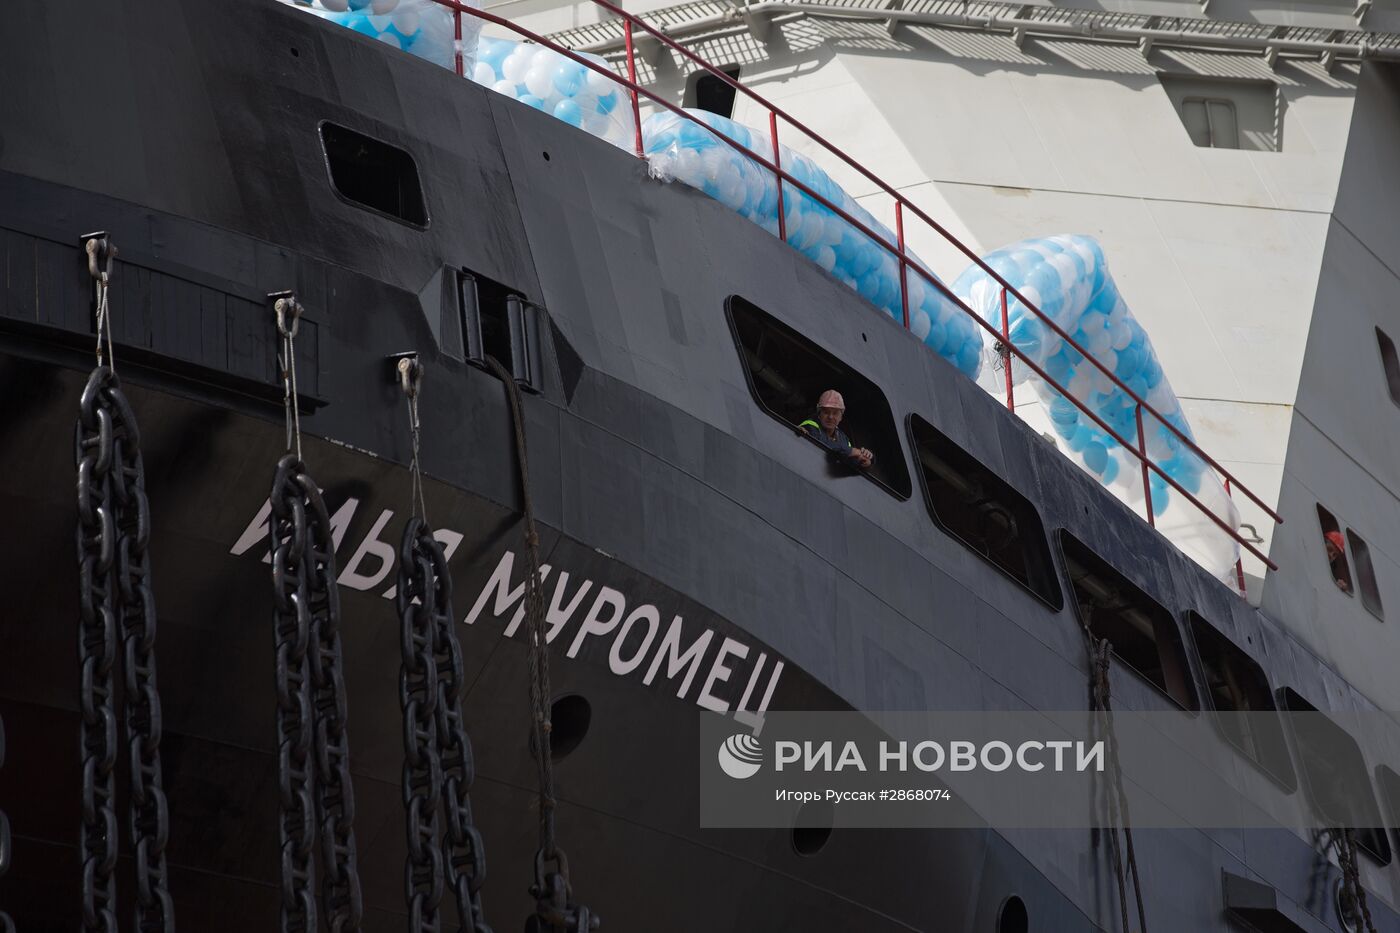 Спуск на воду ледокола "Илья Муромец" в Санкт-Петербурге